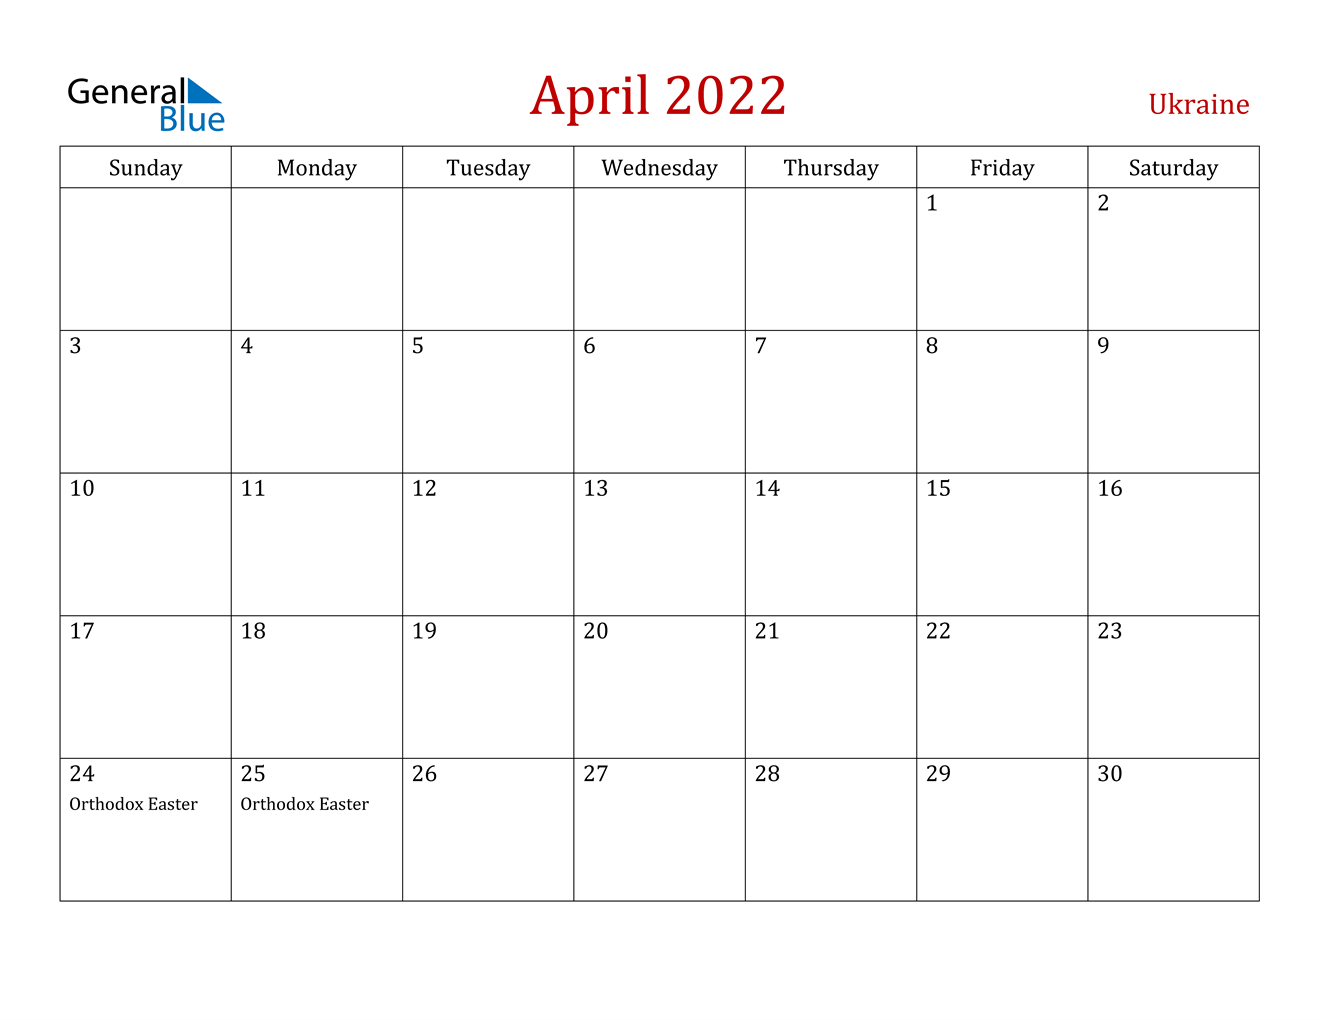 April 2022 Calendar - Ukraine